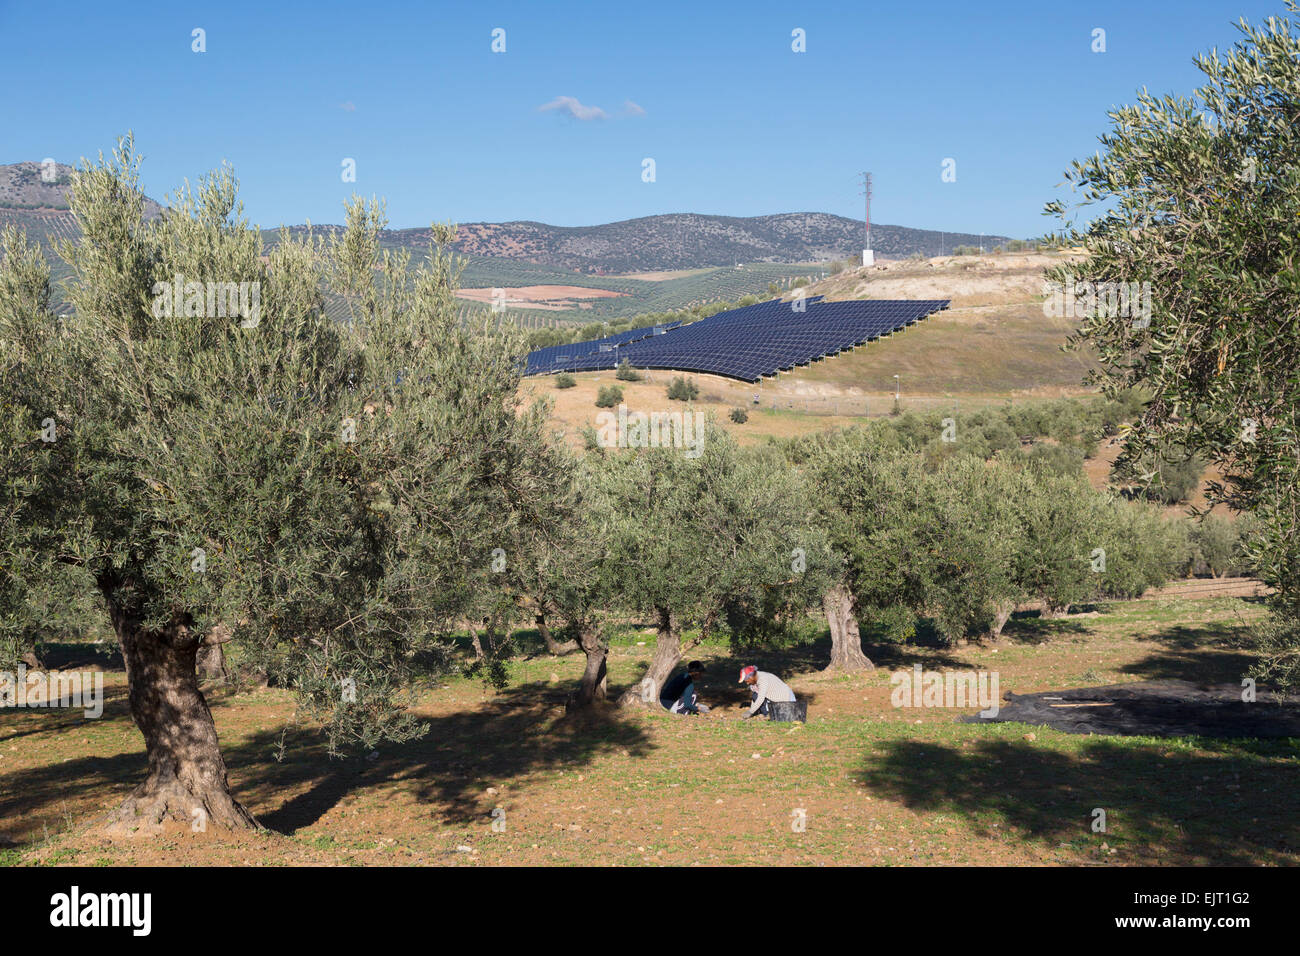 Deux femmes la collecte des olives tombées à partir de la masse. Tableau panneau solaire en arrière-plan. Des oliviers et des panneaux solaires, Espagne Banque D'Images